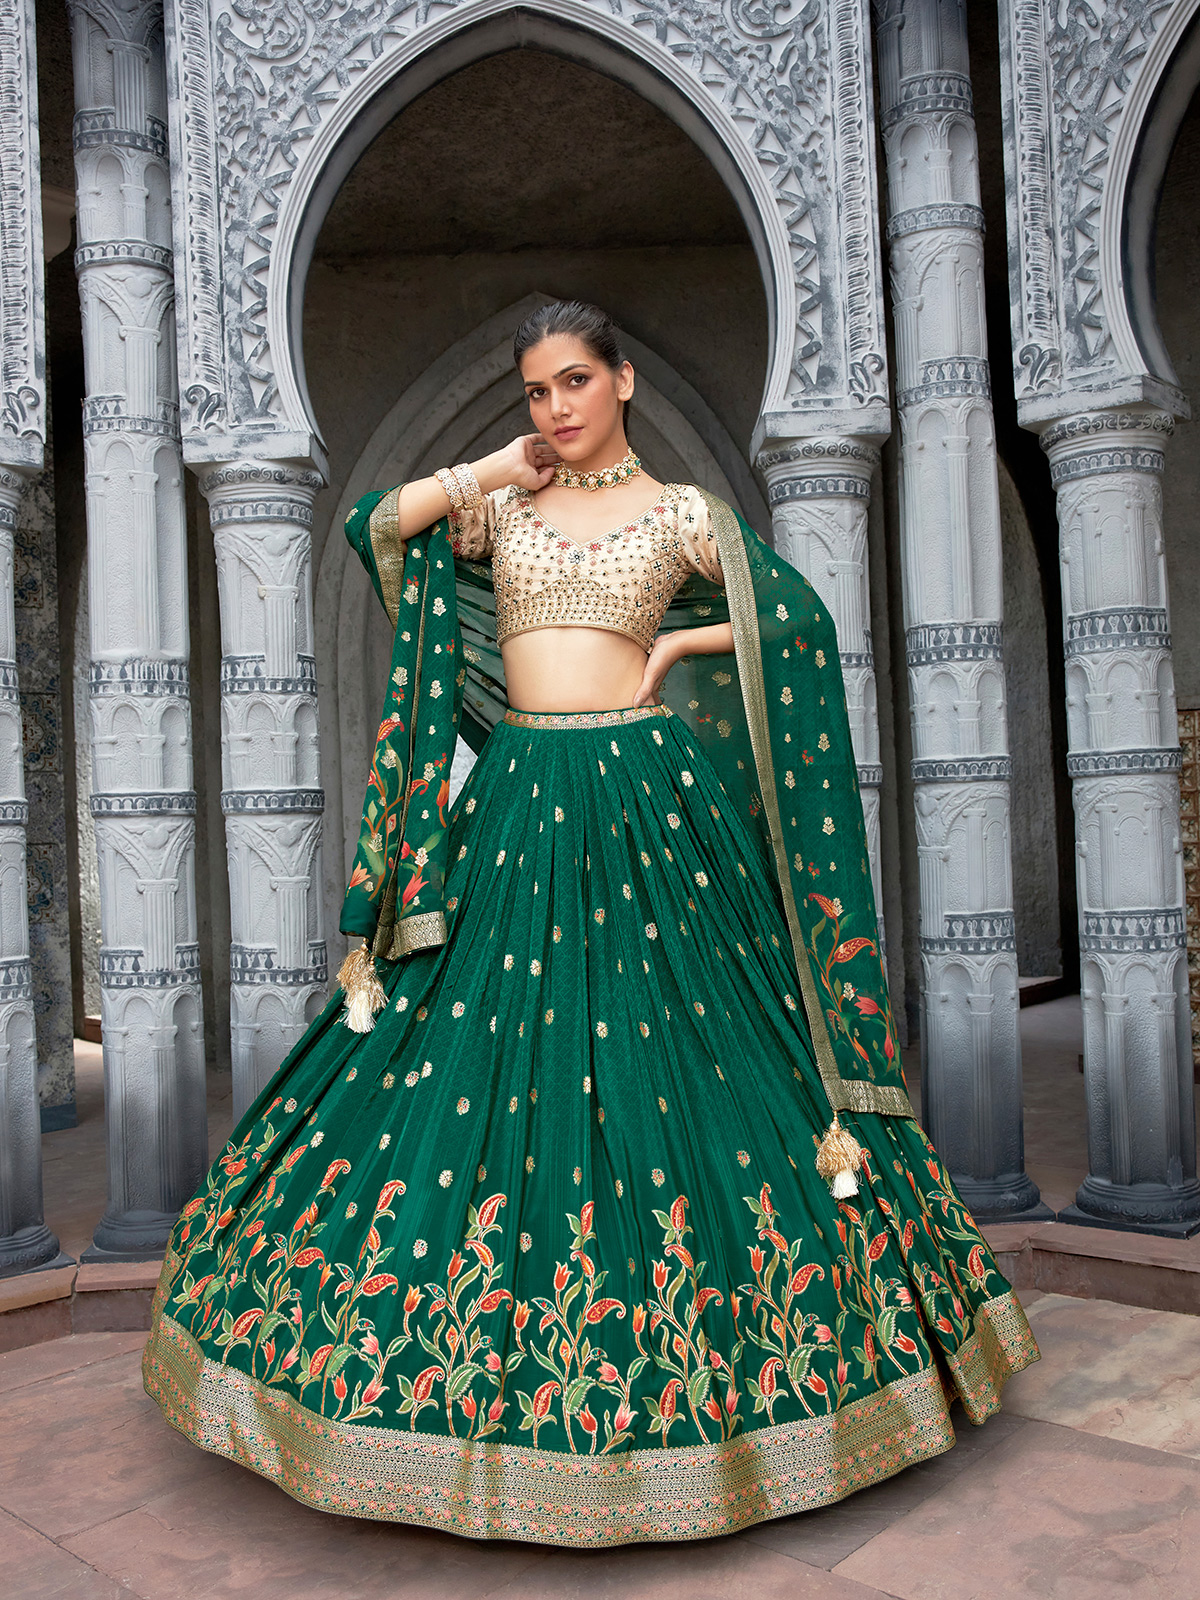 PARTY LENGHA INDIAN DESIGNER LEHENGA CHOLI NEW WEDDING PAKISTANI WEAR  BOLLYWOOD | eBay